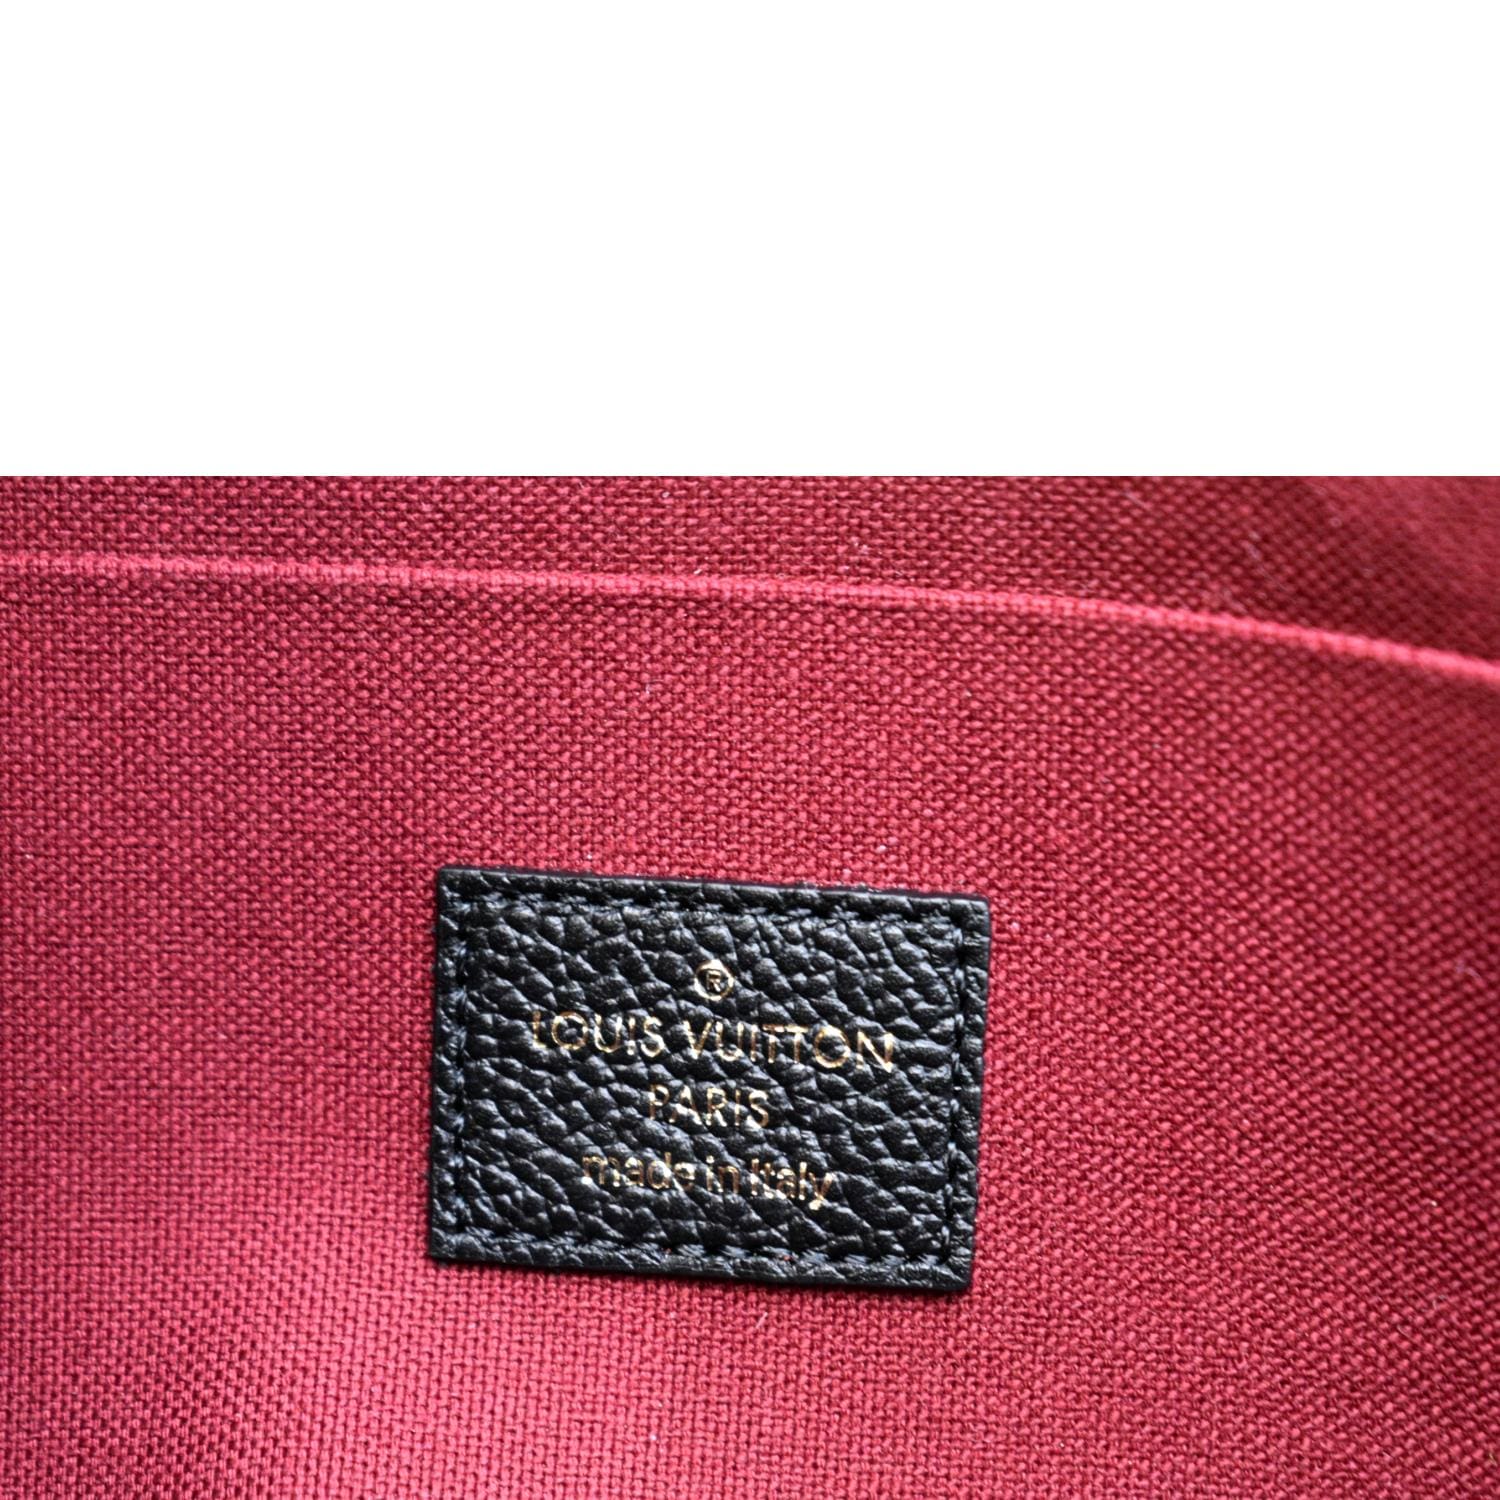 Pochette Felicie Crafty Bicolor Empreinte – Keeks Designer Handbags